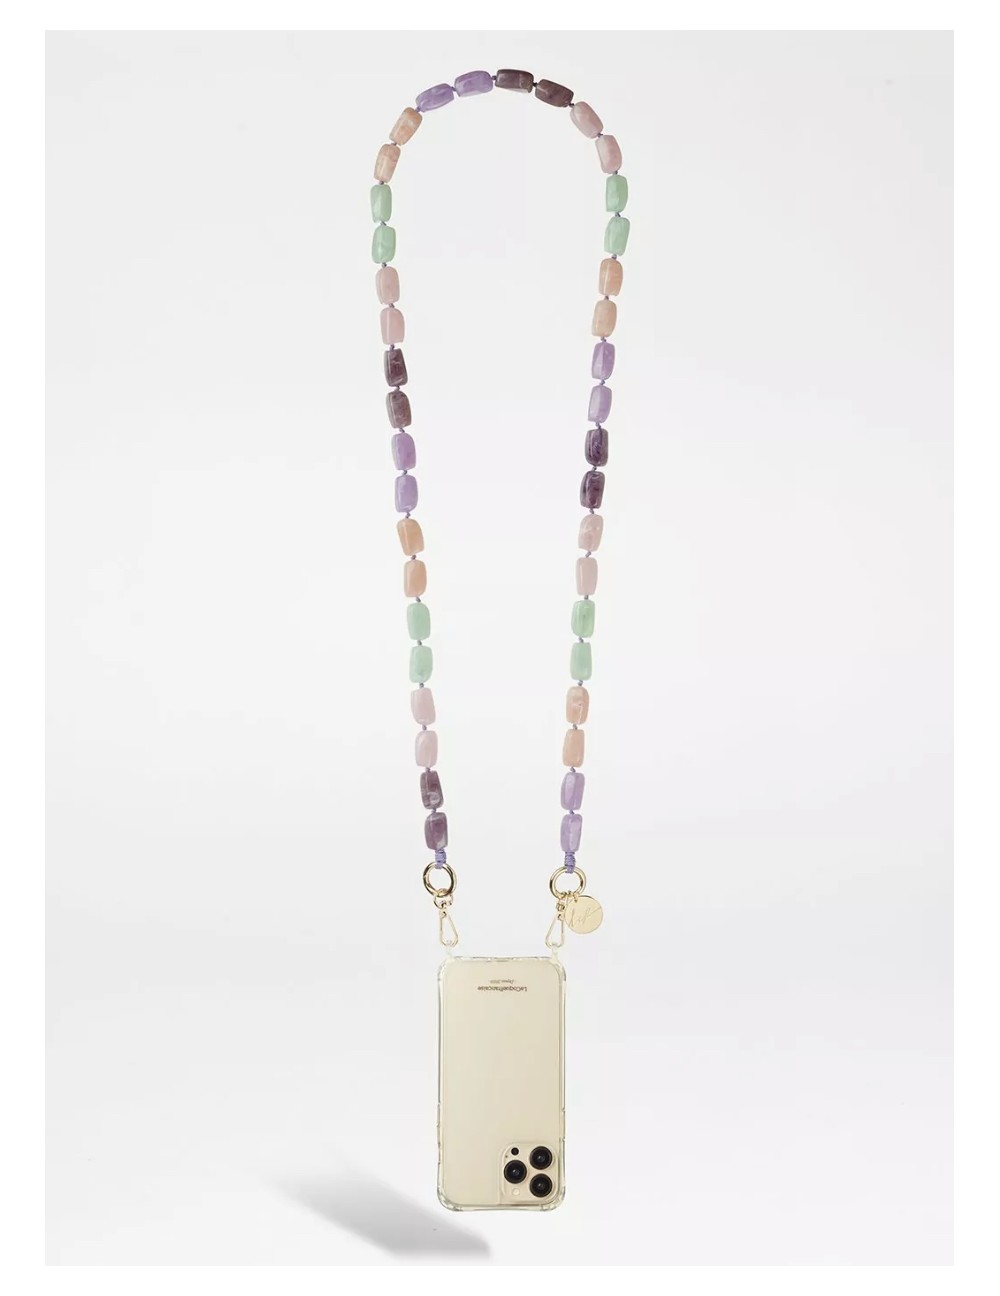 Chaine bijoux Talia 120 cm perles violettes et roses aves fil violet et mousquetons dorés